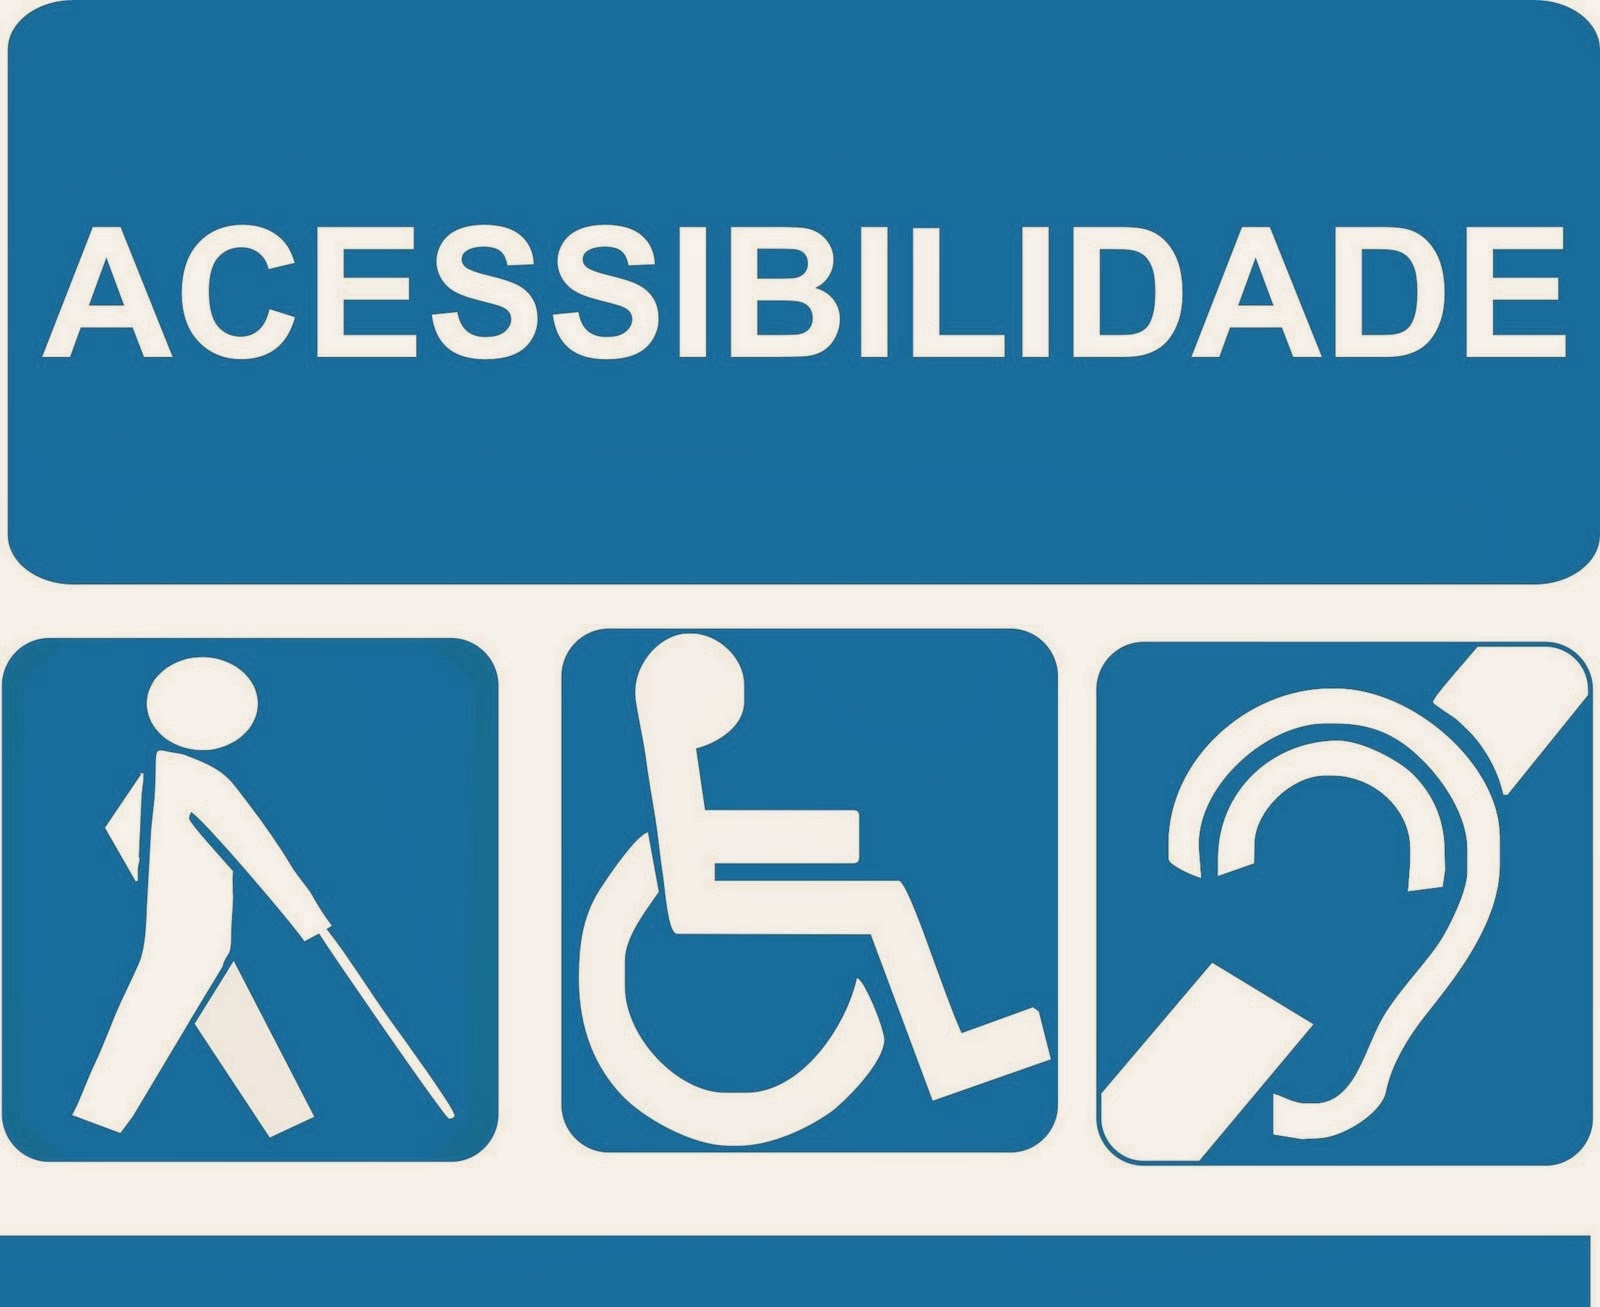 Pessoas com Deficiência: Inclusão e Acessibilidade fazem parte da agenda permanente do SMC